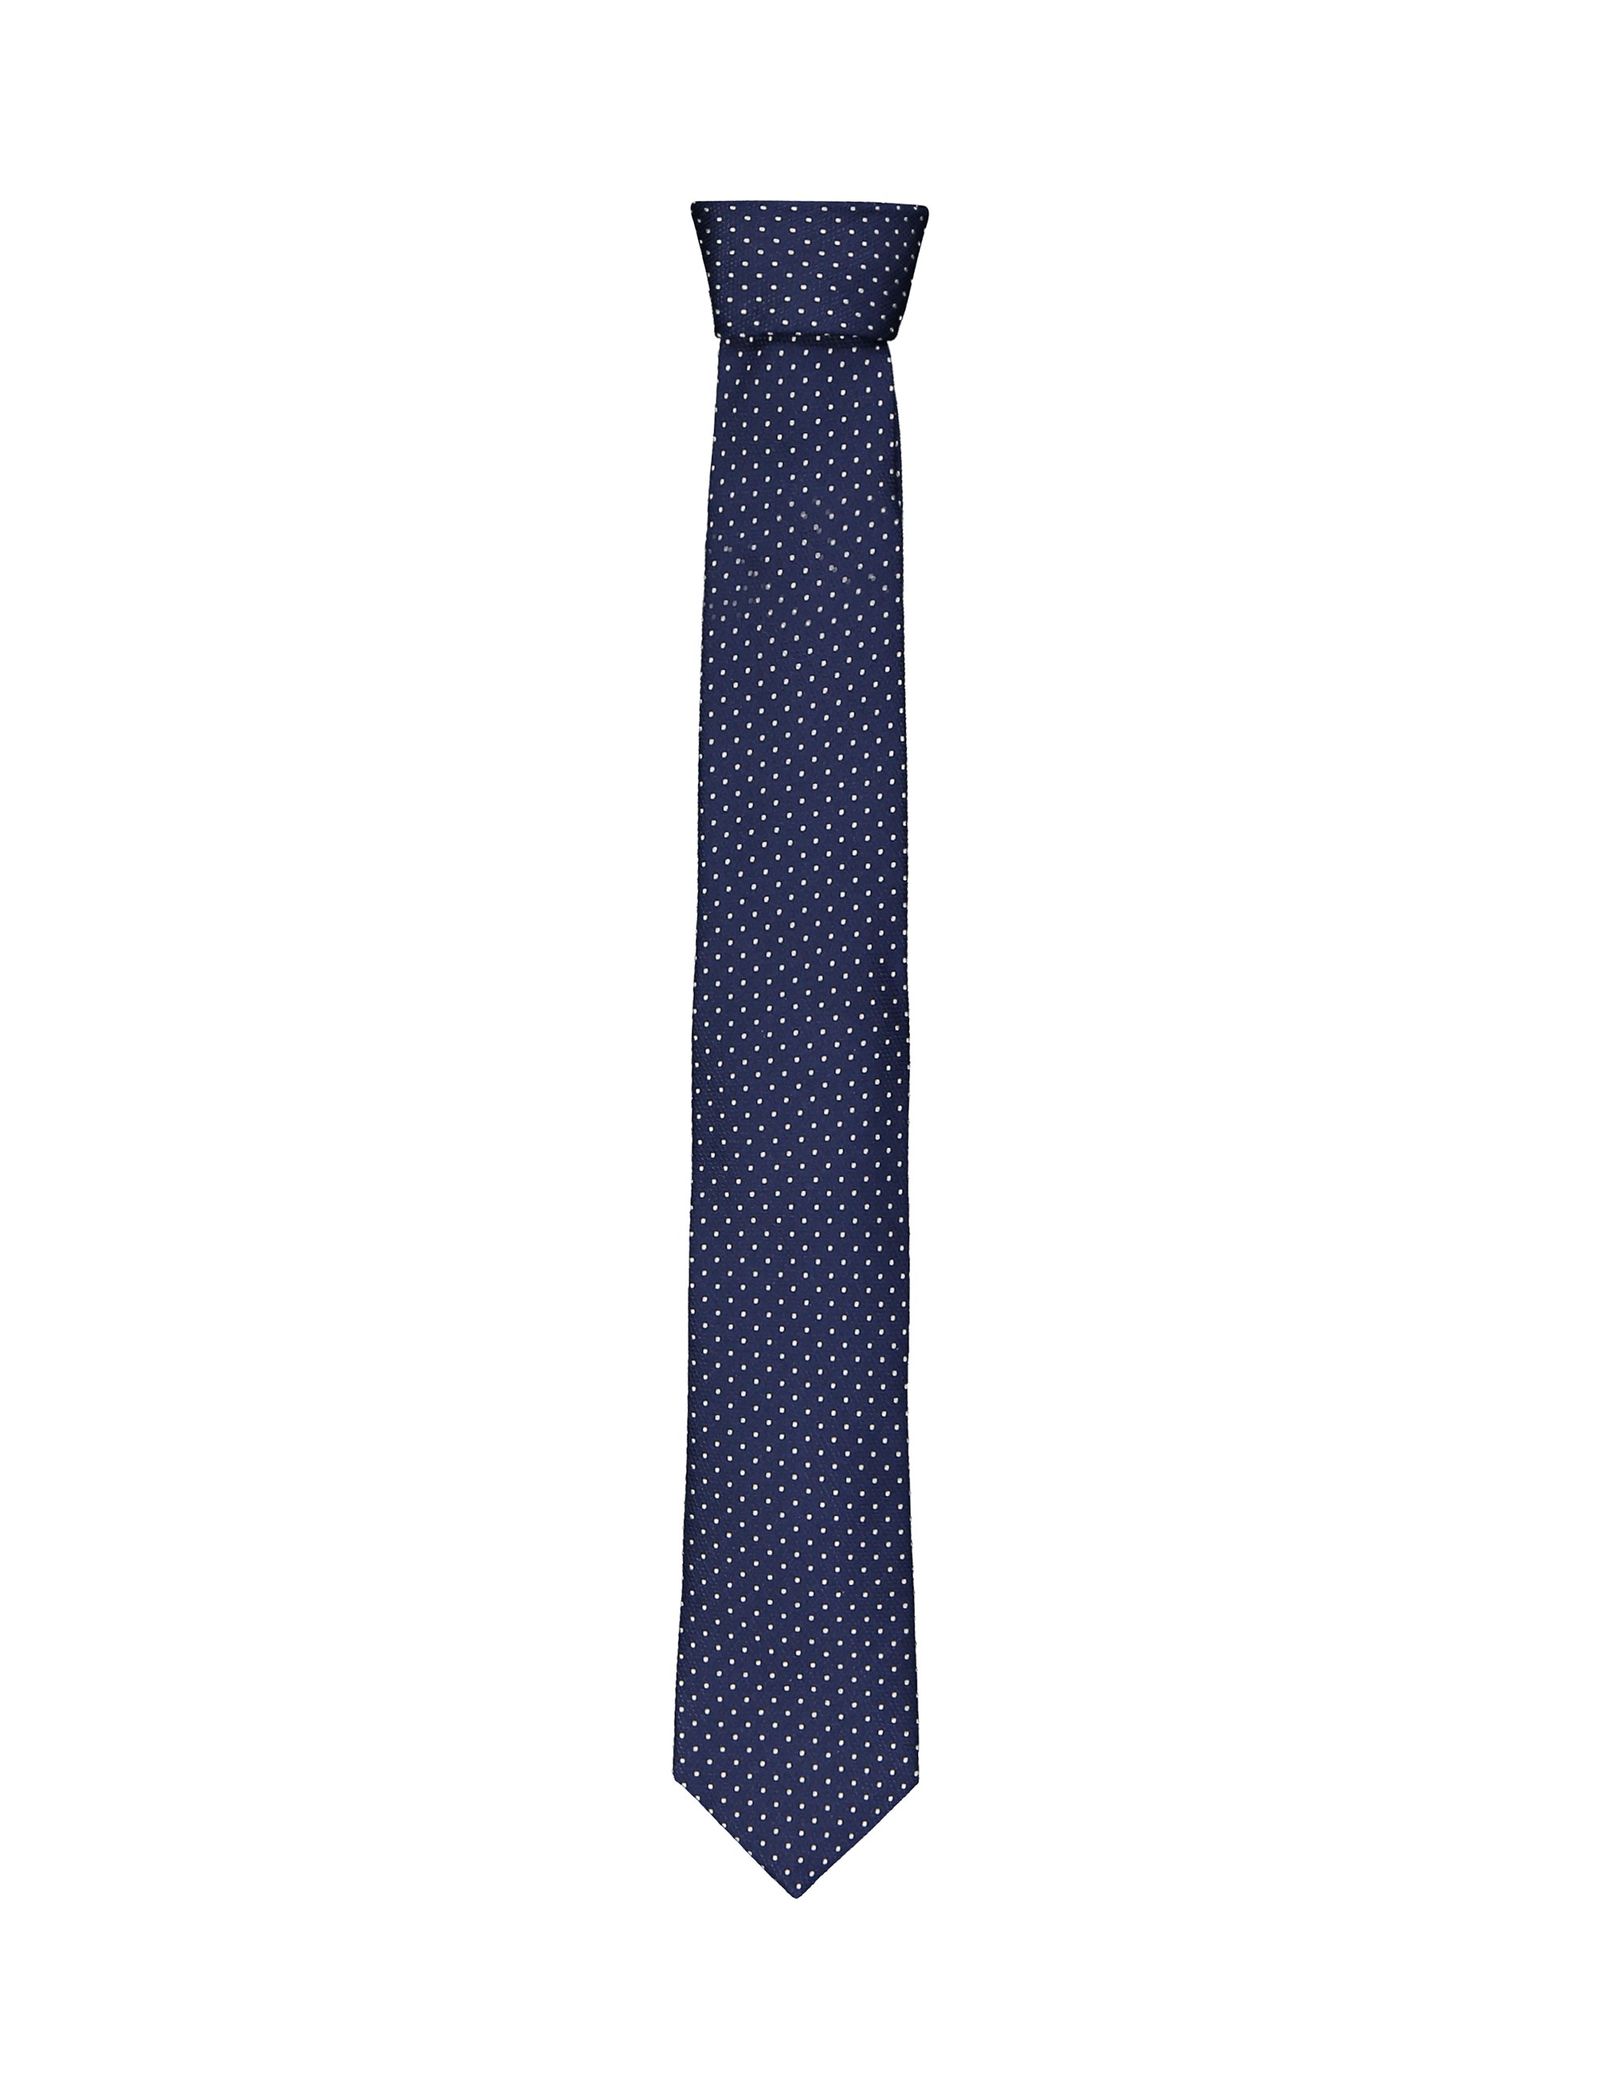 کراوات ابریشمی طرح دار مردانه - یوپیم - سرمه اي - 2